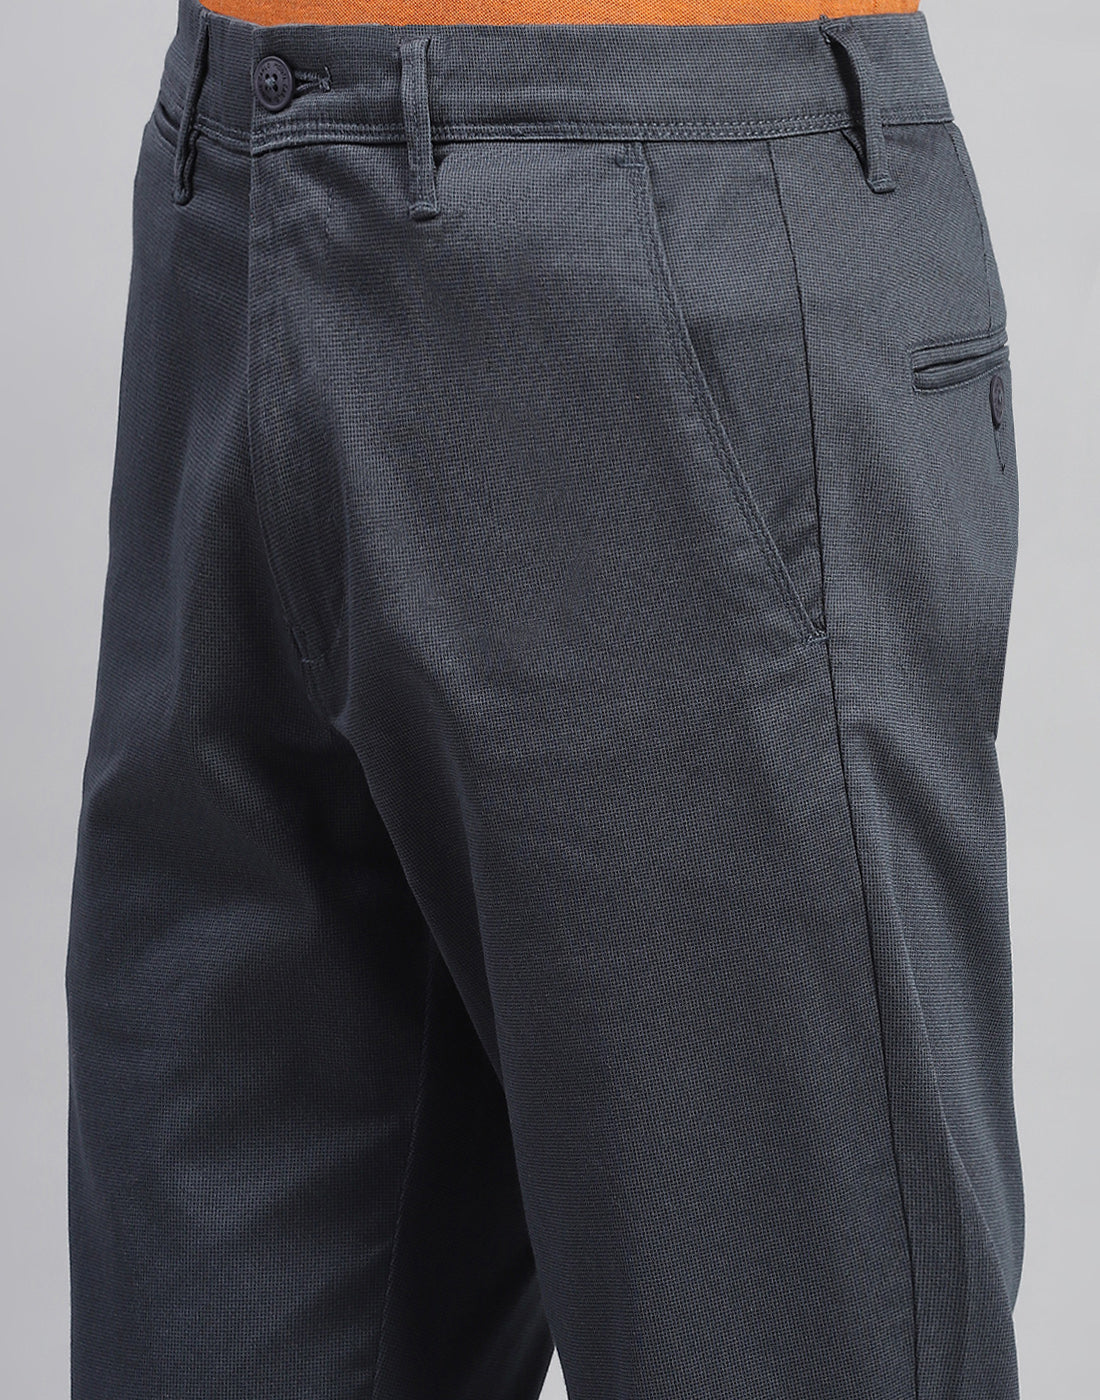 Men Navy Blue Solid Regular Fit Trouser